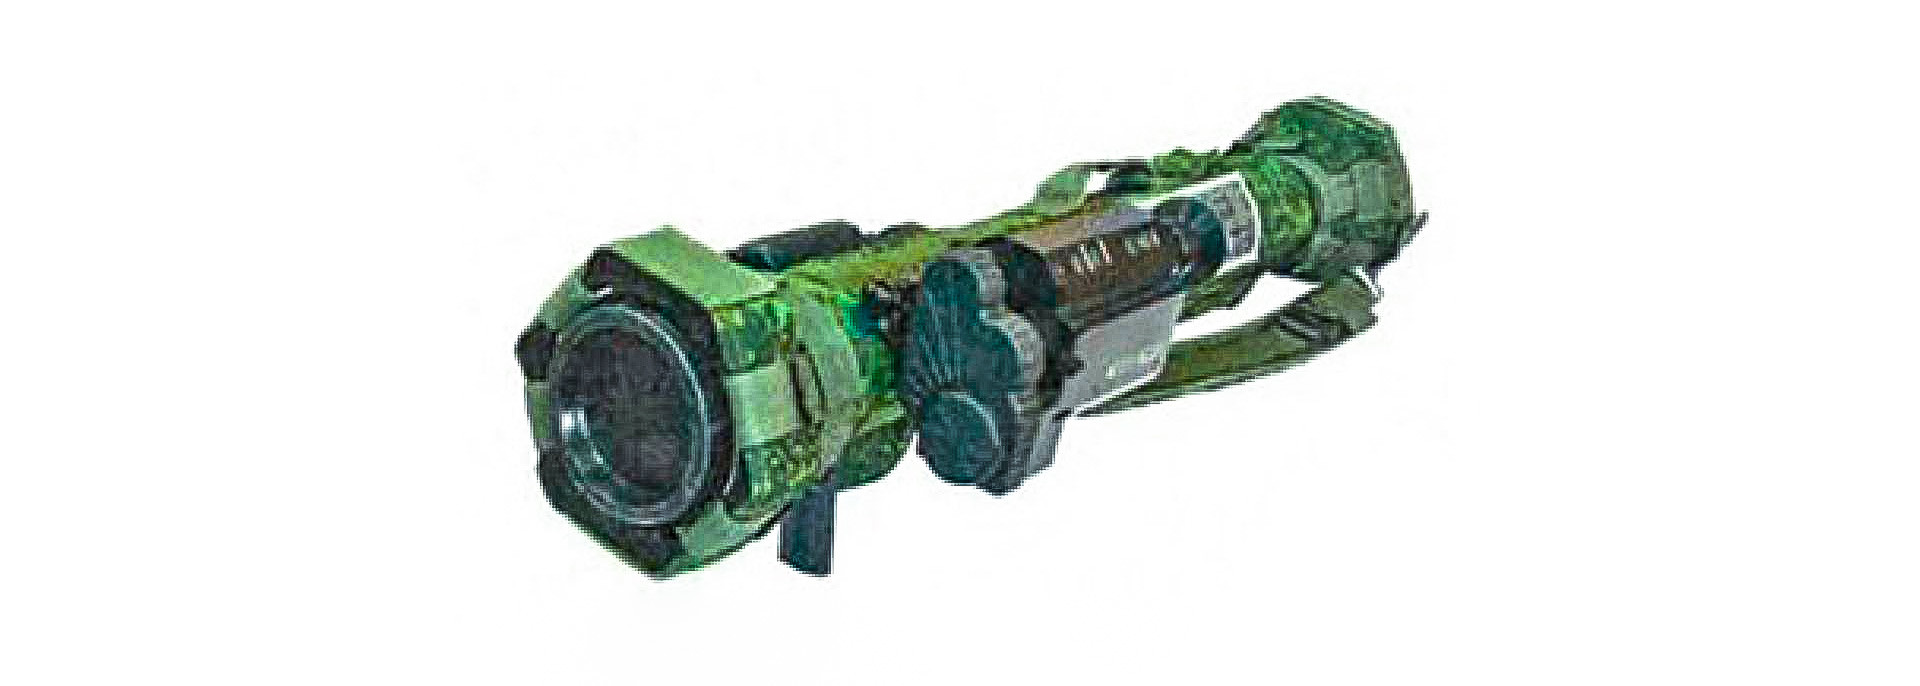 Спољни облик новог ручно ракетног бацача са хибридним карактеристикама „Смесь“ 